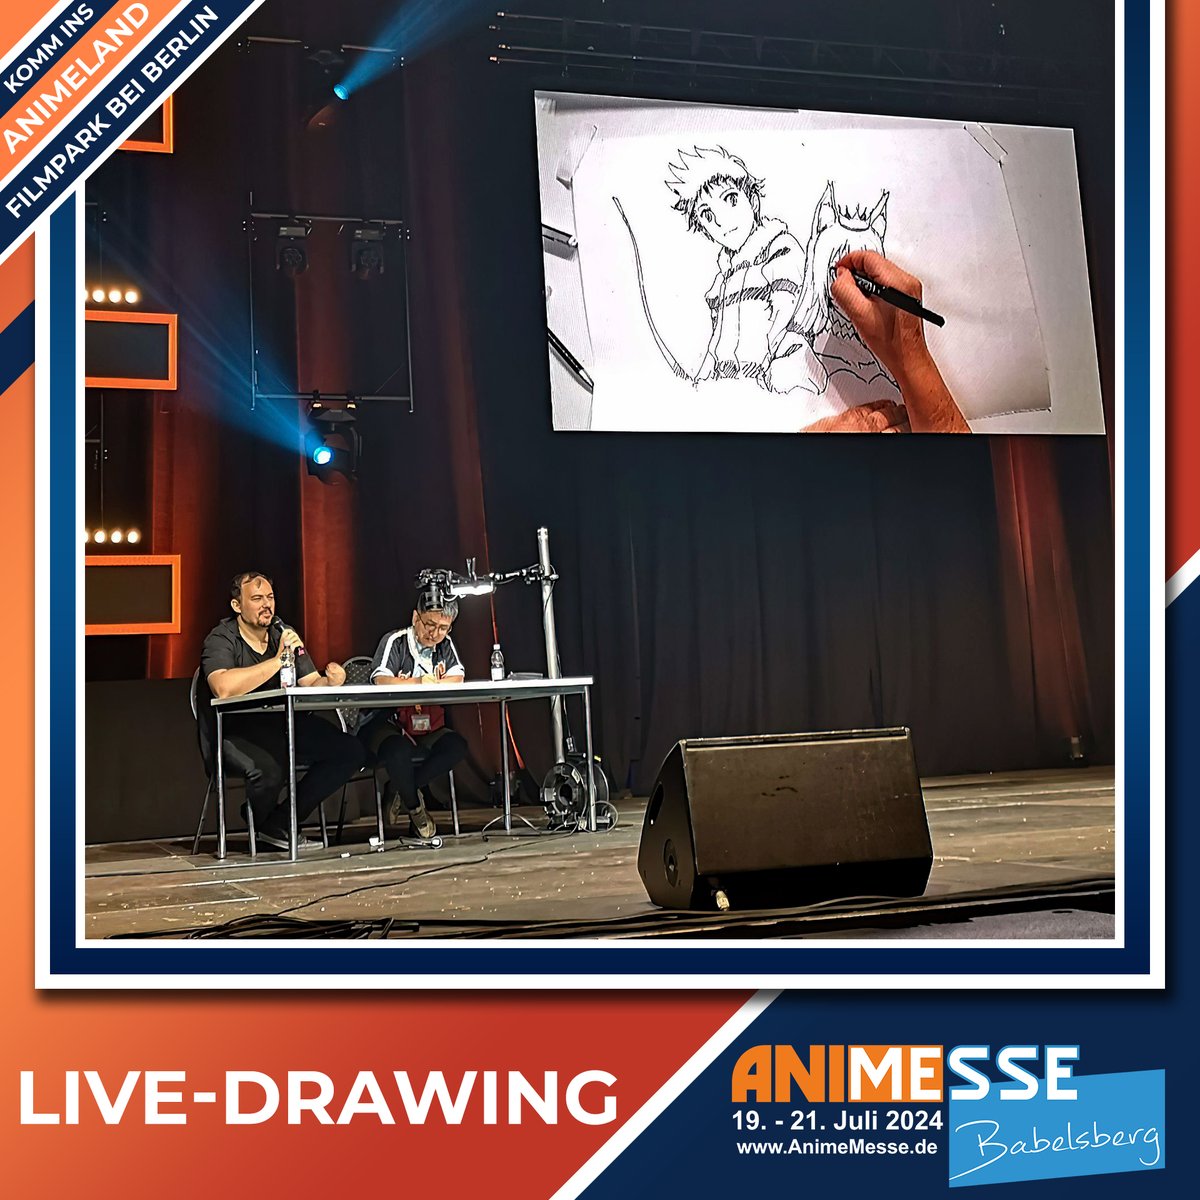 🎌🌸 Erlebt die Magie des Anime! Seht zu, wie japanische Künstler live ihre Kunstwerke schaffen. Besucht uns im #Animeland vom 19. bis 21. Juli bei Berlin. Hier ein Bild vom Live-Drawing 2023 mit Regisseur Yuichi Nakazawa von 'A Playthrough of a Certain Dude's VRMMO Life'. 🎨✨